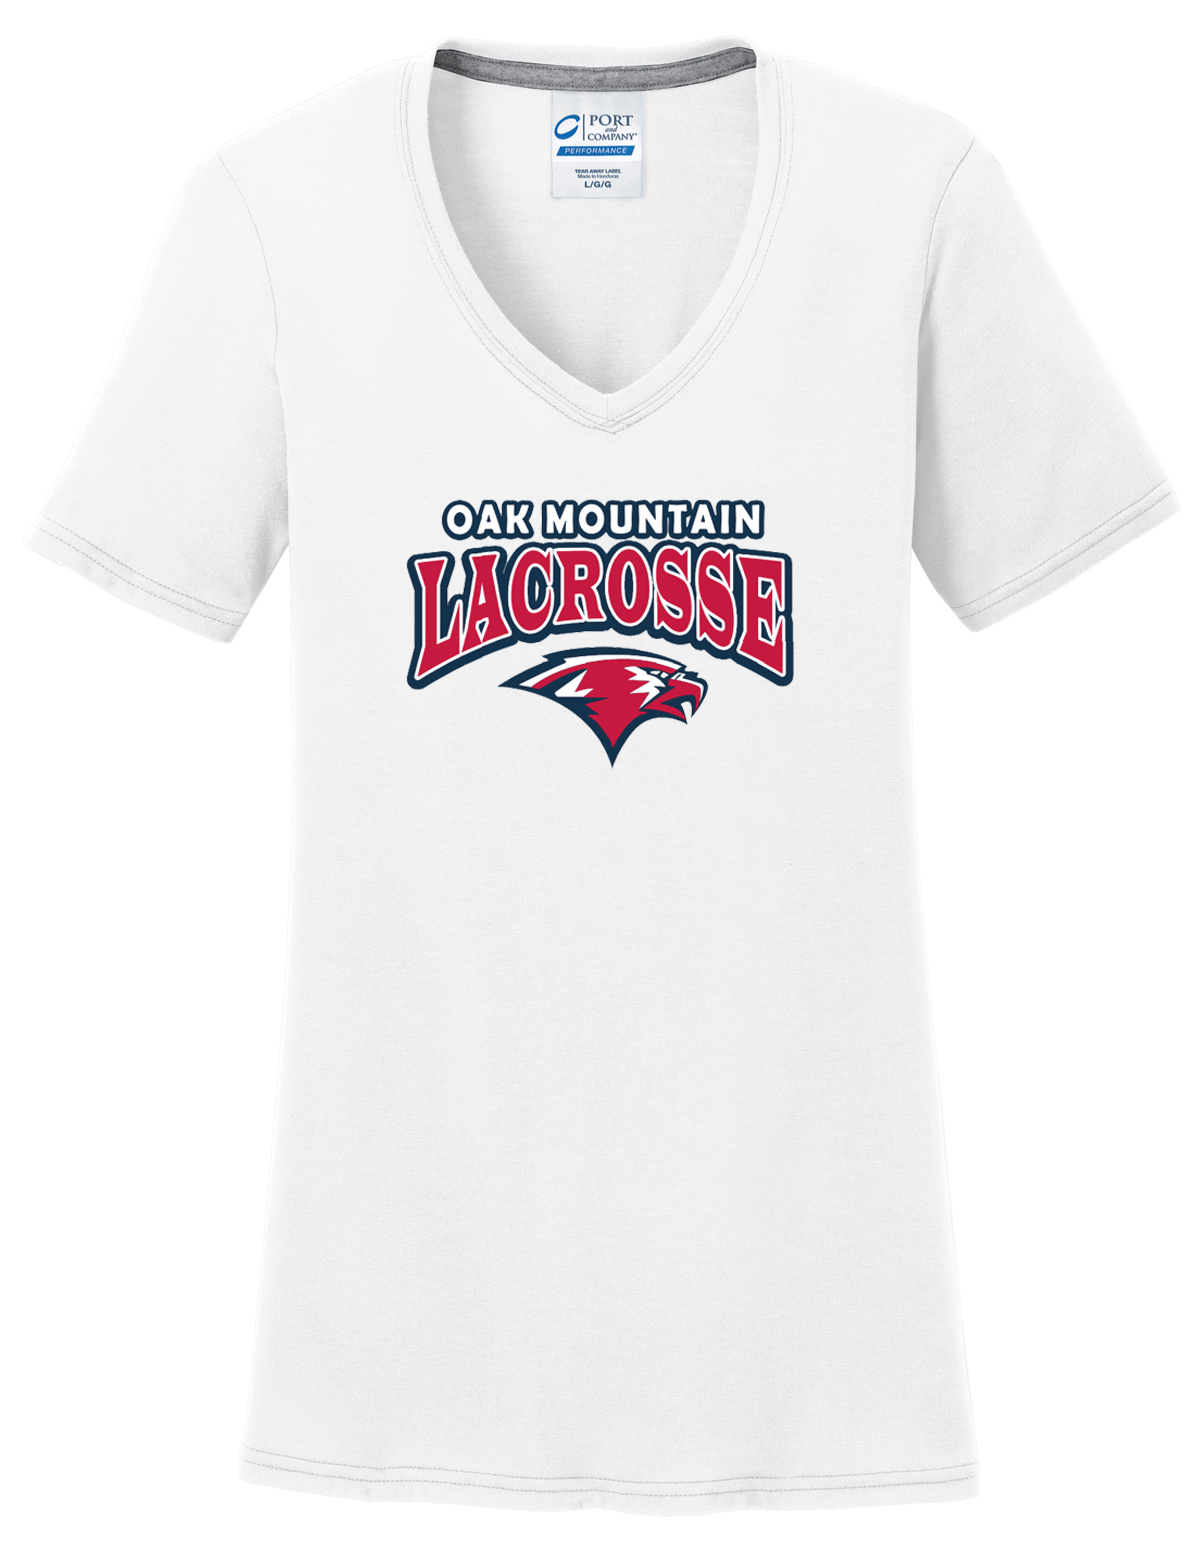 Oak Mtn. Lacrosse Women's White T-Shirt